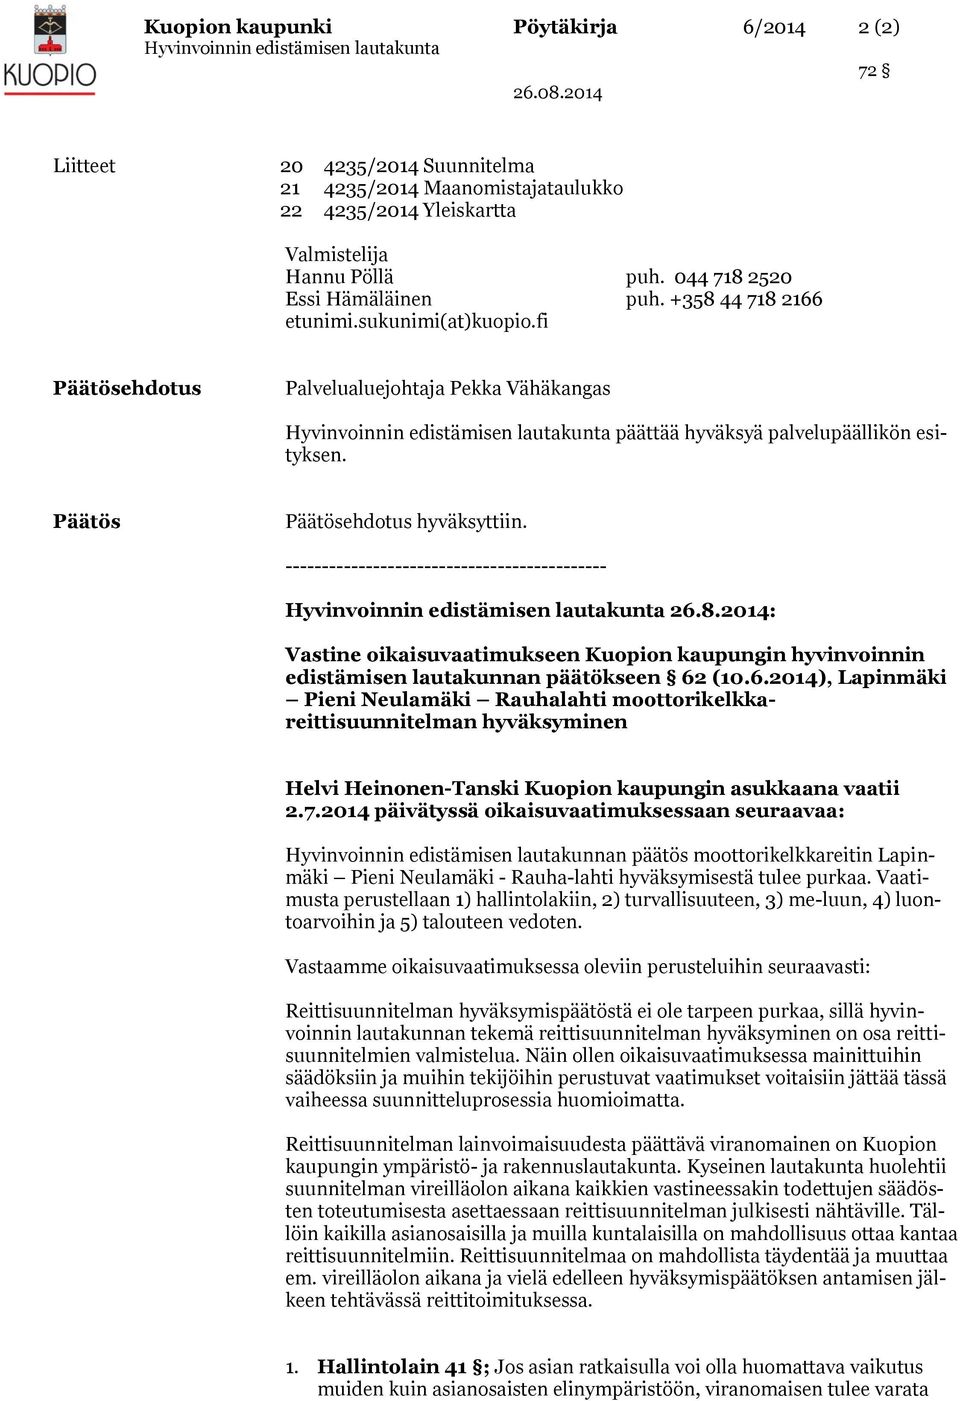 -------------------------------------------- 26.8.2014: Vastine oikaisuvaatimukseen Kuopion kaupungin hyvinvoinnin edistämisen lautakunnan päätökseen 62 (10.6.2014), Lapinmäki Pieni Neulamäki Rauhalahti moottorikelkkareittisuunnitelman hyväksyminen Helvi Heinonen-Tanski Kuopion kaupungin asukkaana vaatii 2.